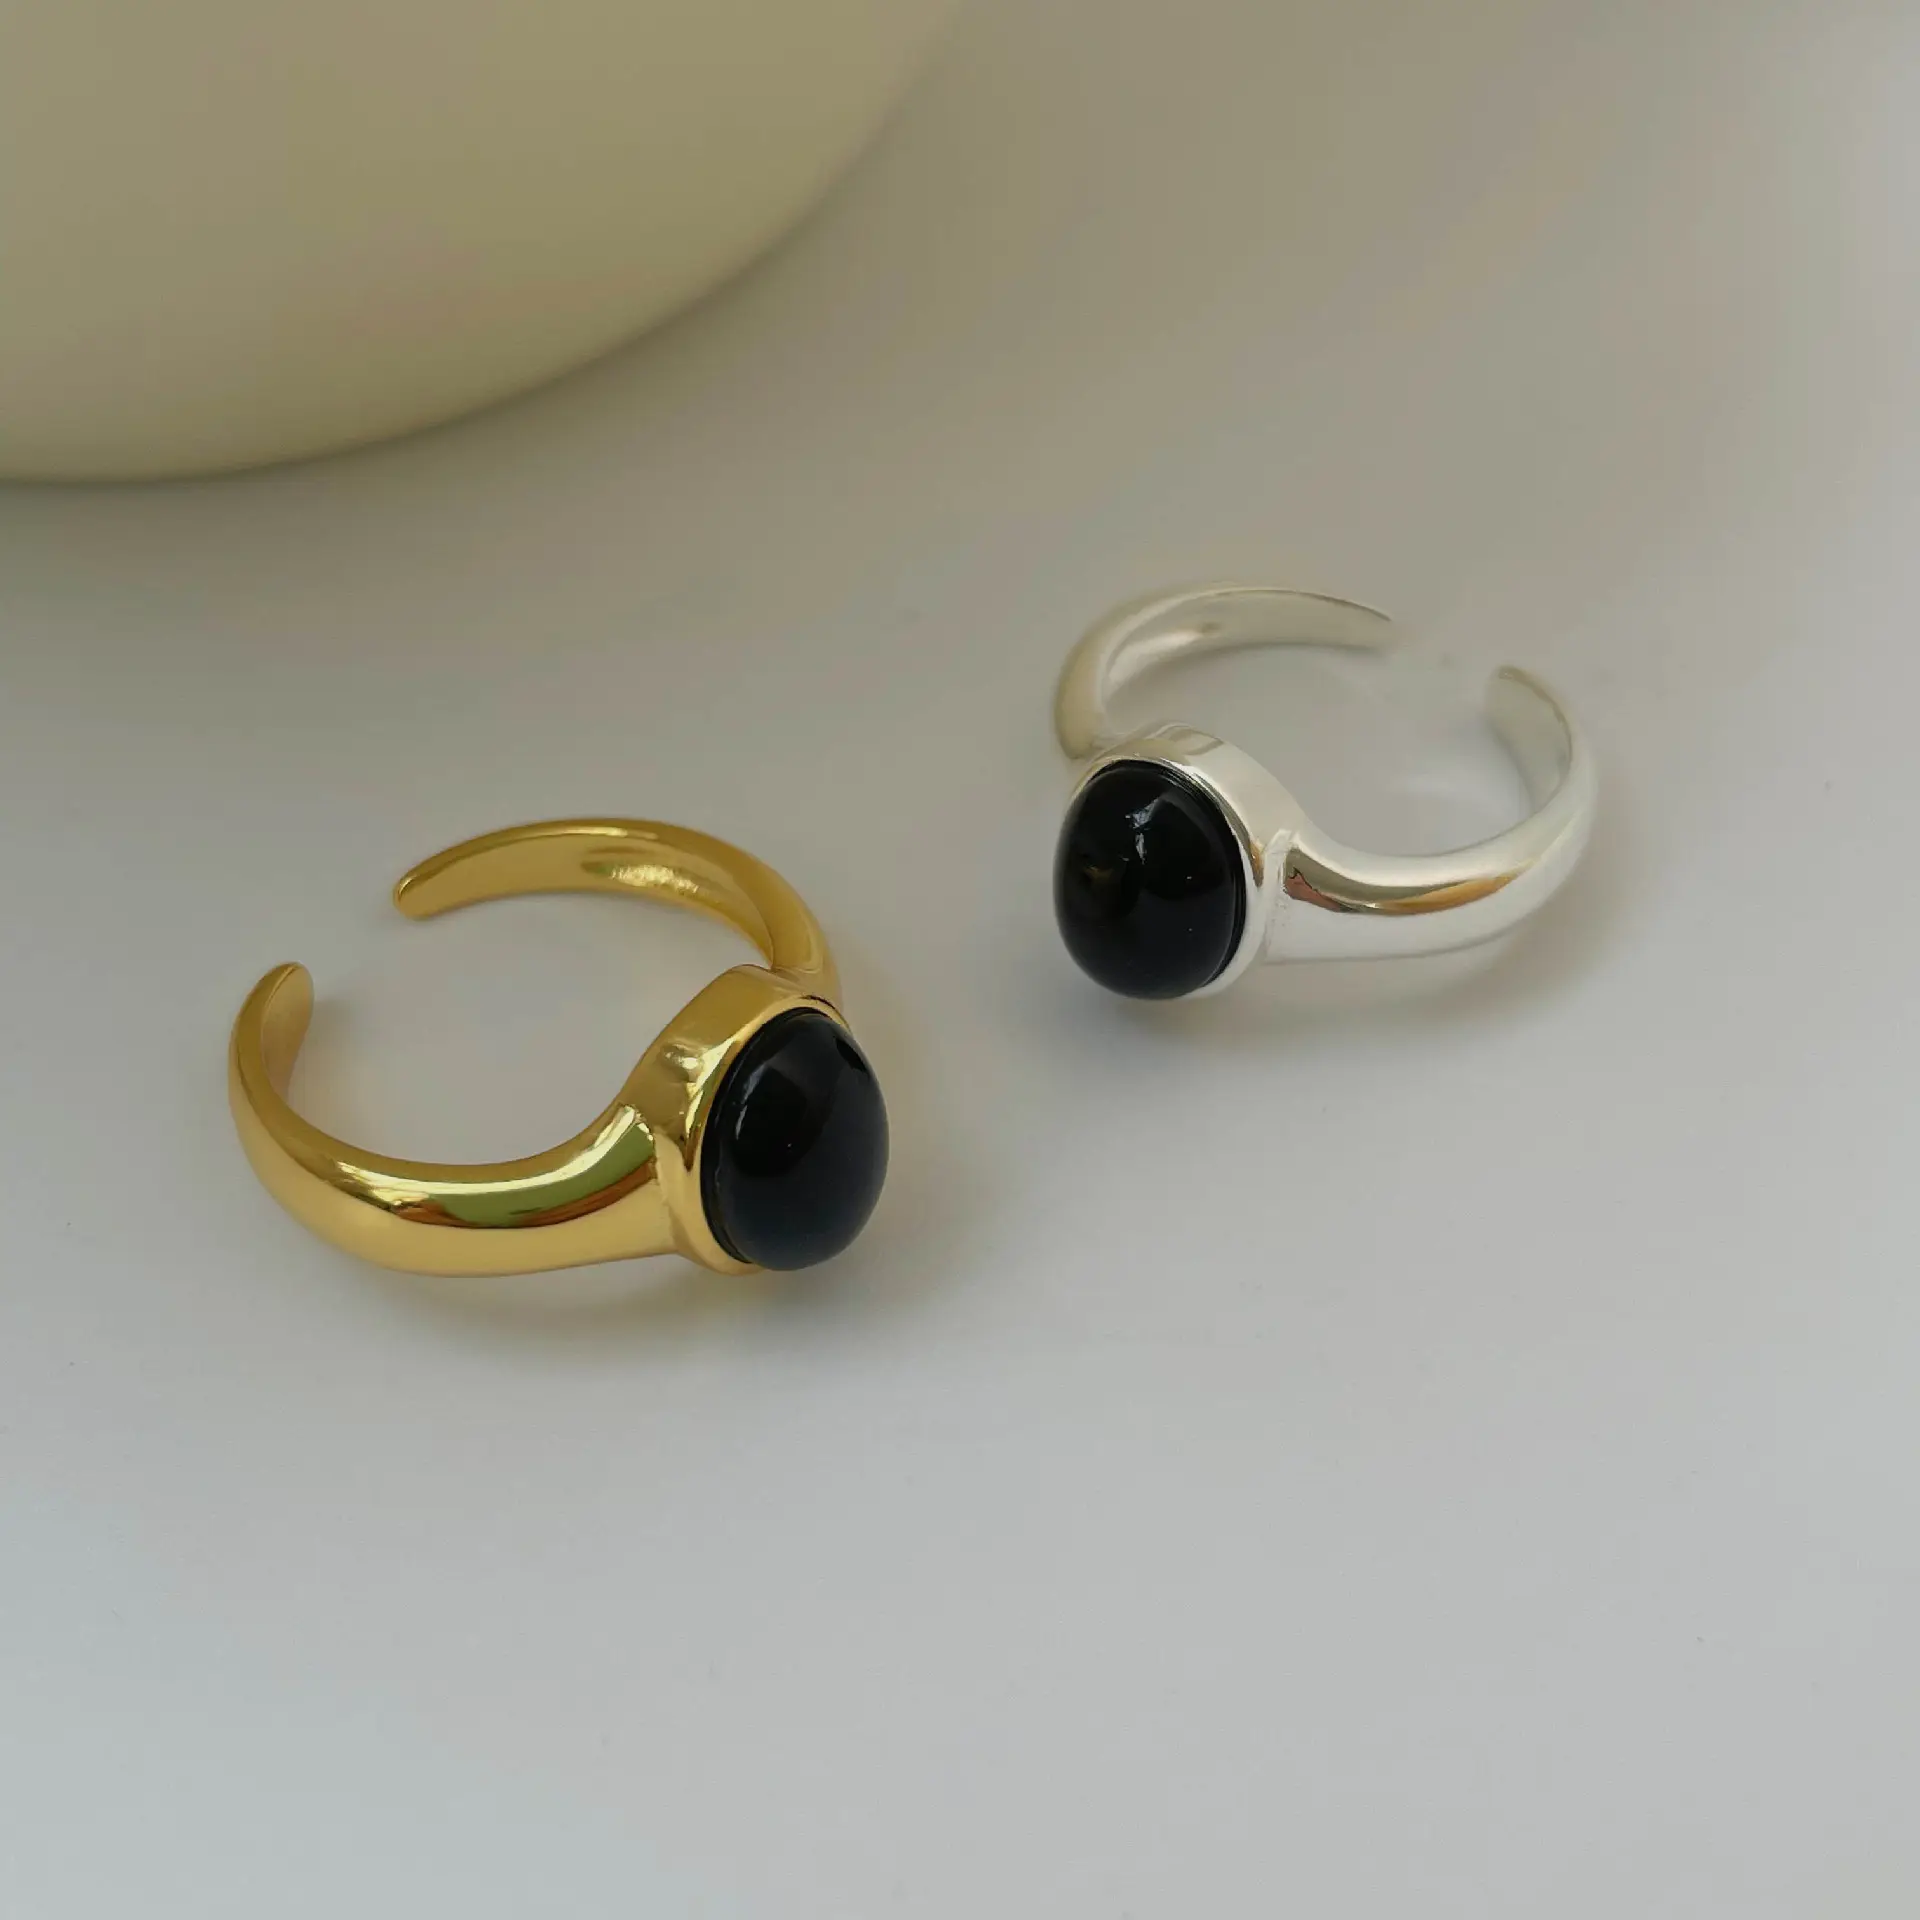 XIXI moda negro ónix piedra anillo ajustable dedo 925 Plata ágata moda joyería anillos para mujeres